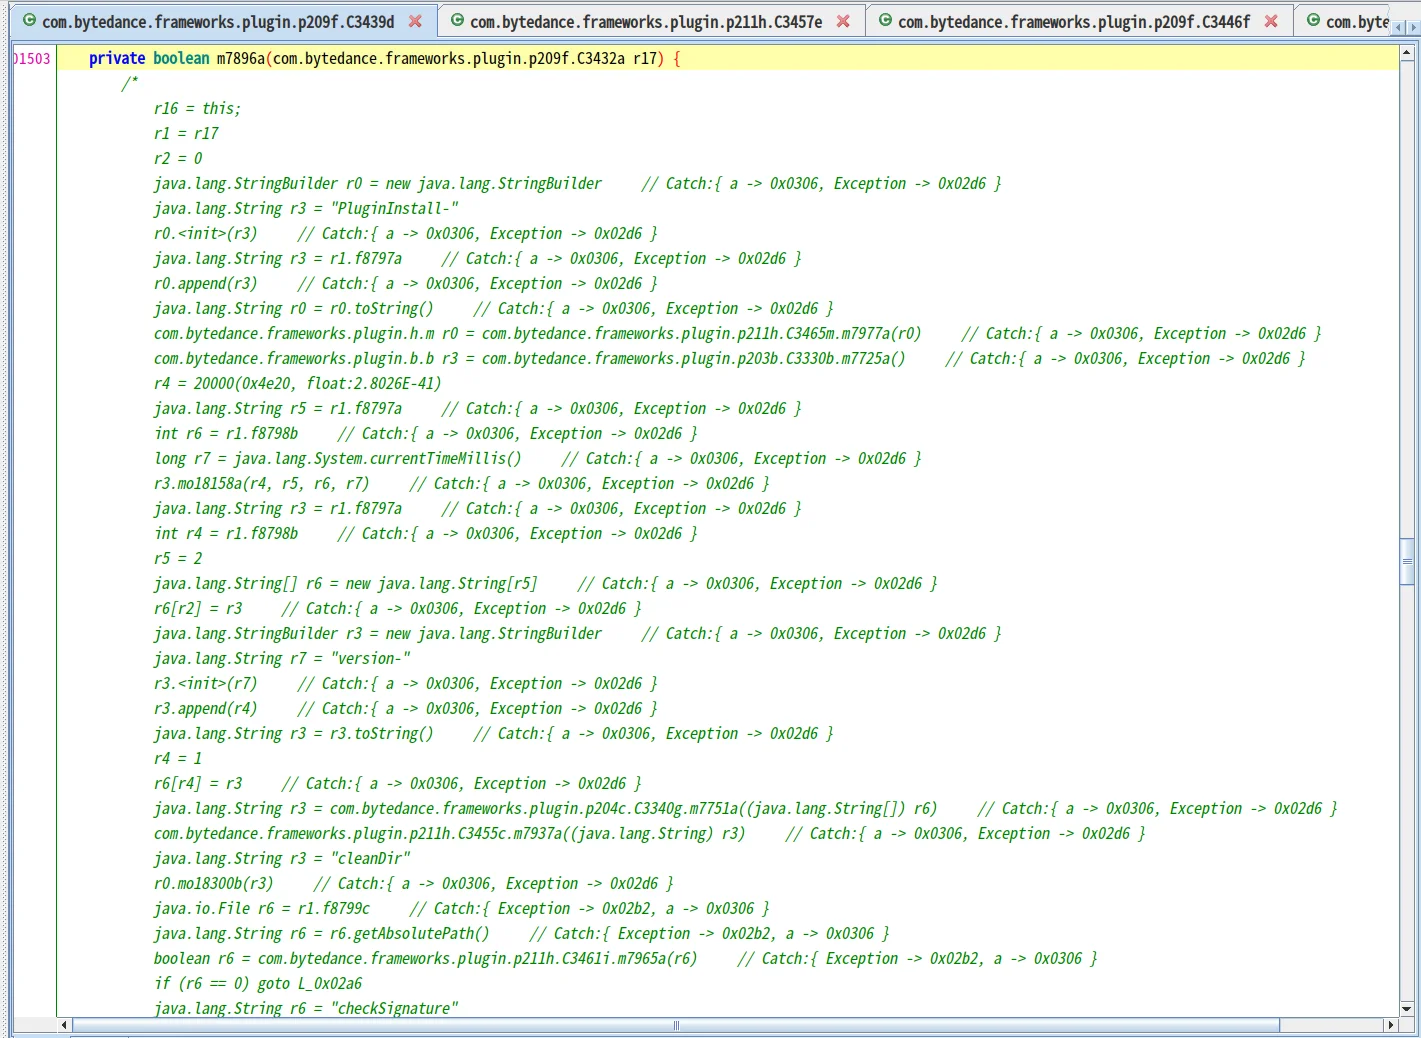 Screengrab of source code